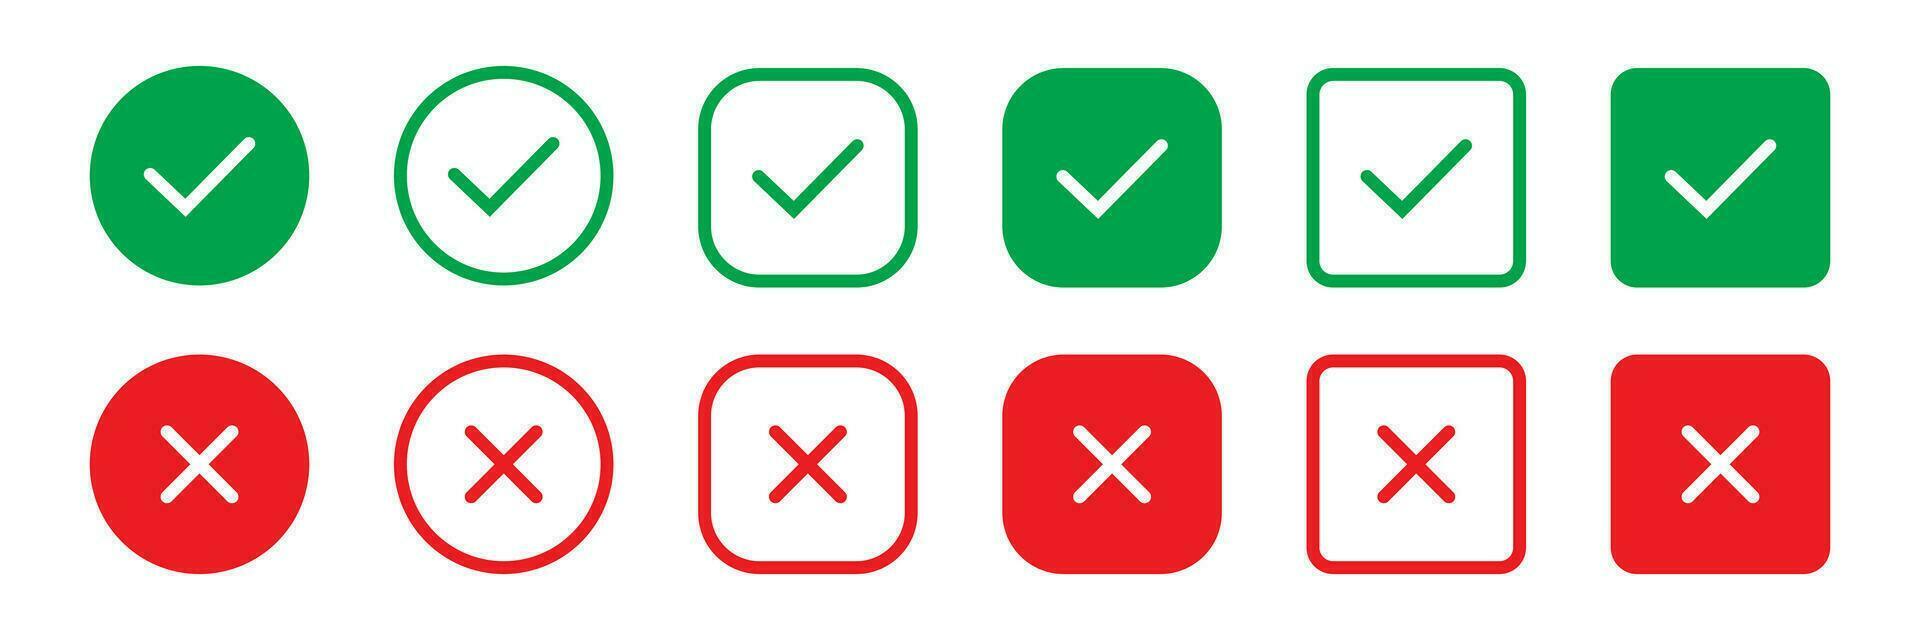 impostato verde approvazione dai un'occhiata marchio e rosso attraversare icone nel cerchio e quadrato, lista di controllo segni, piatto segno di spunta approvazione distintivo, isolato vettore zecca simboli.